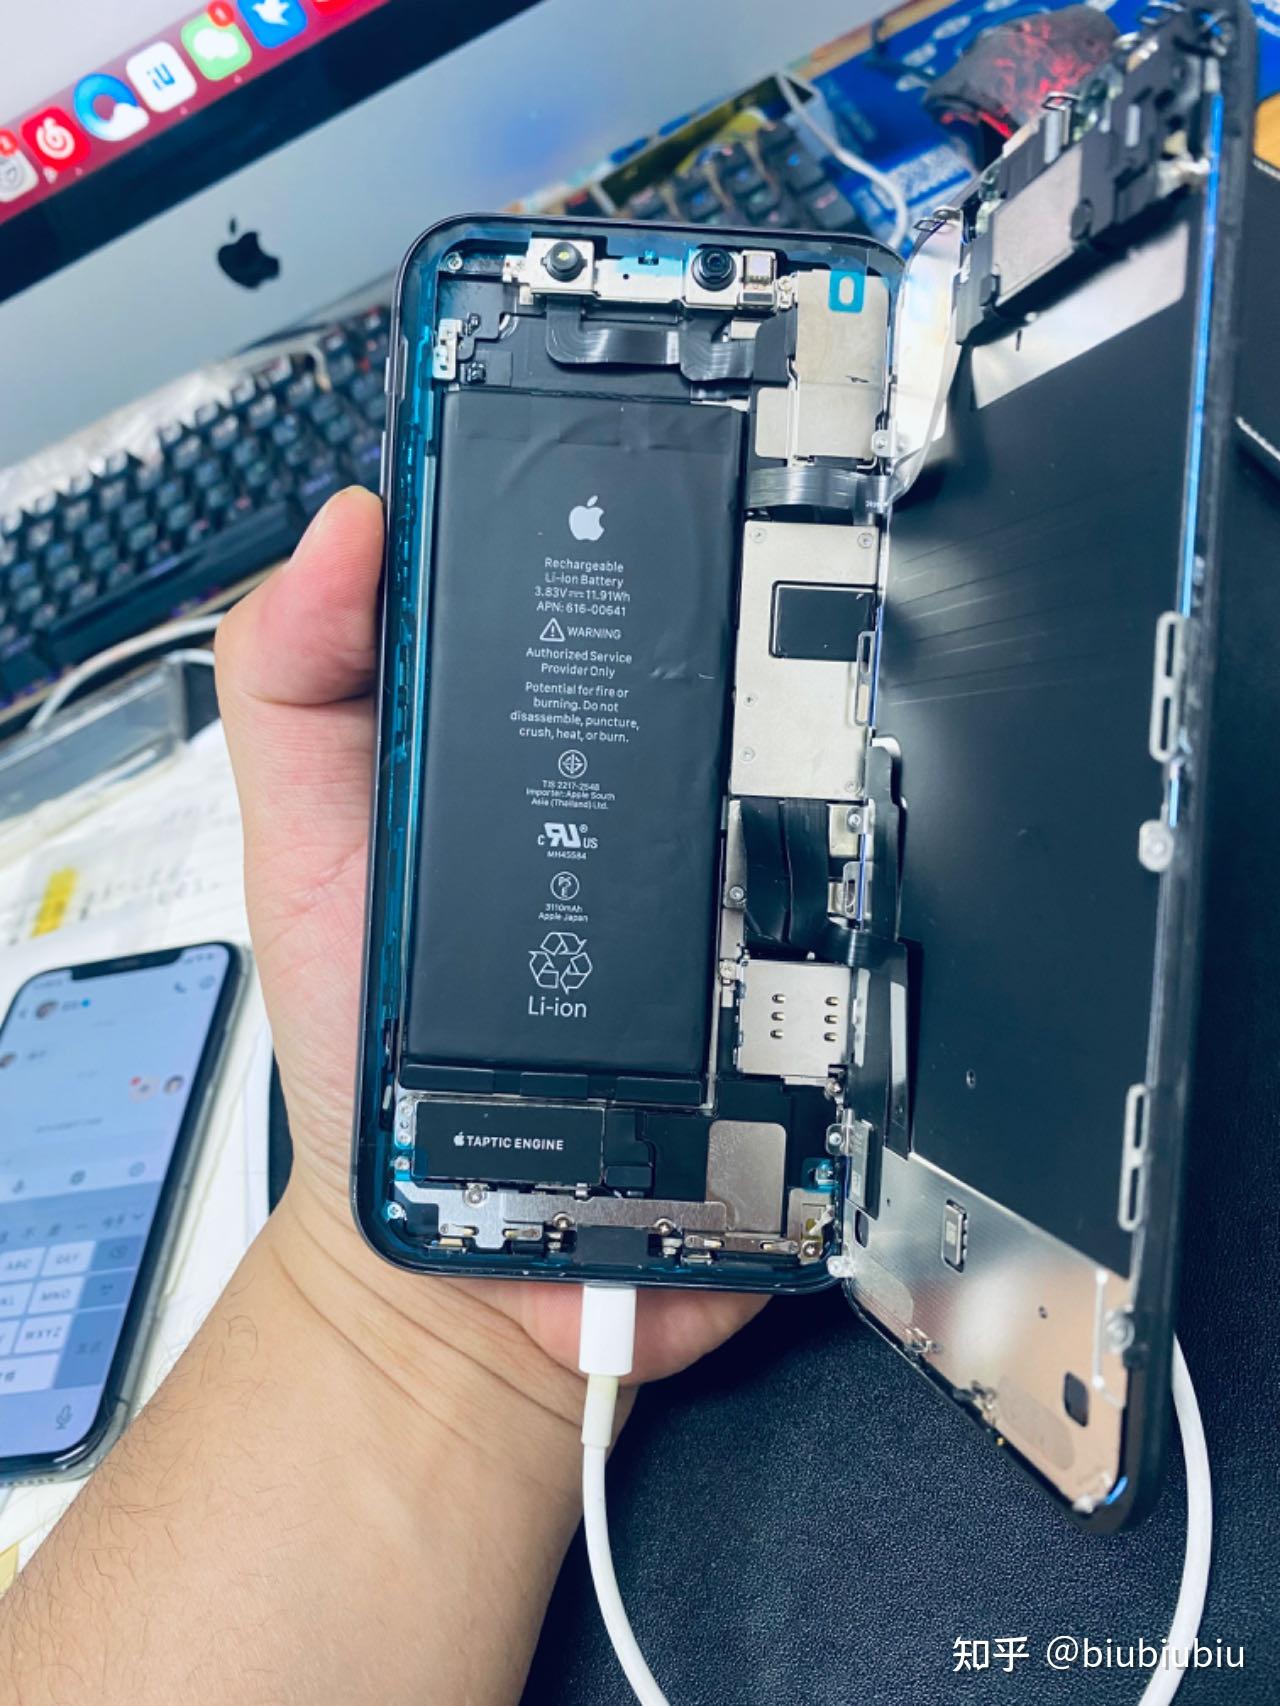 iphone换过非原装电池,去苹果售后维修,说换原装电池可能无限重启,这